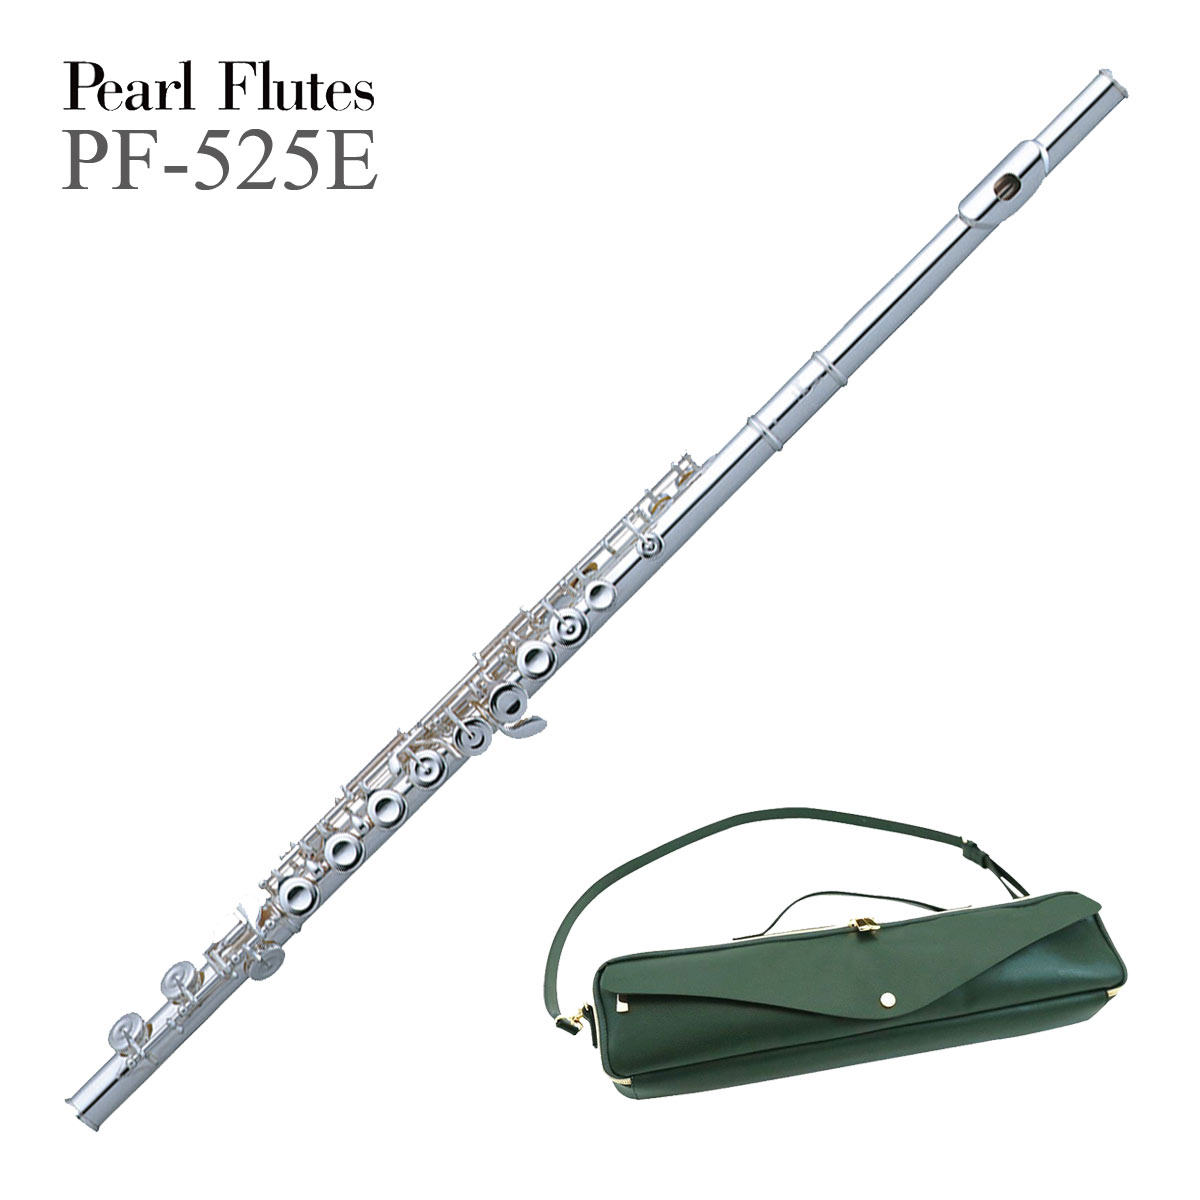 パールフルート×レガートラルゴ コラボケースカバーセット Pearl Flute 高級素材使用ブランド 完成品 PF-525E パール ライザー銀製 リッププレート フルート 《レガートラルゴセット》《出荷前検品》《5年保証》